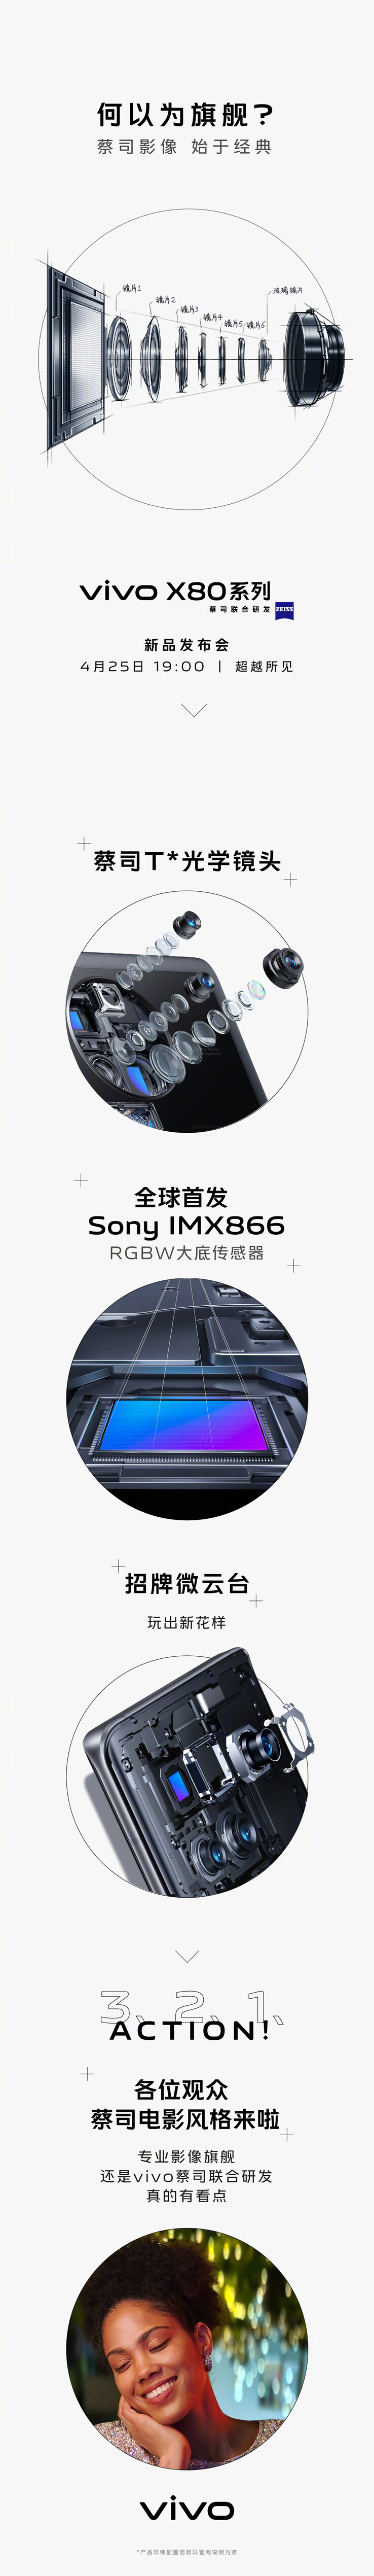 Vivo présente la nouvelle caméra principale Sony du X80s. (Source : Vivo via Weibo)